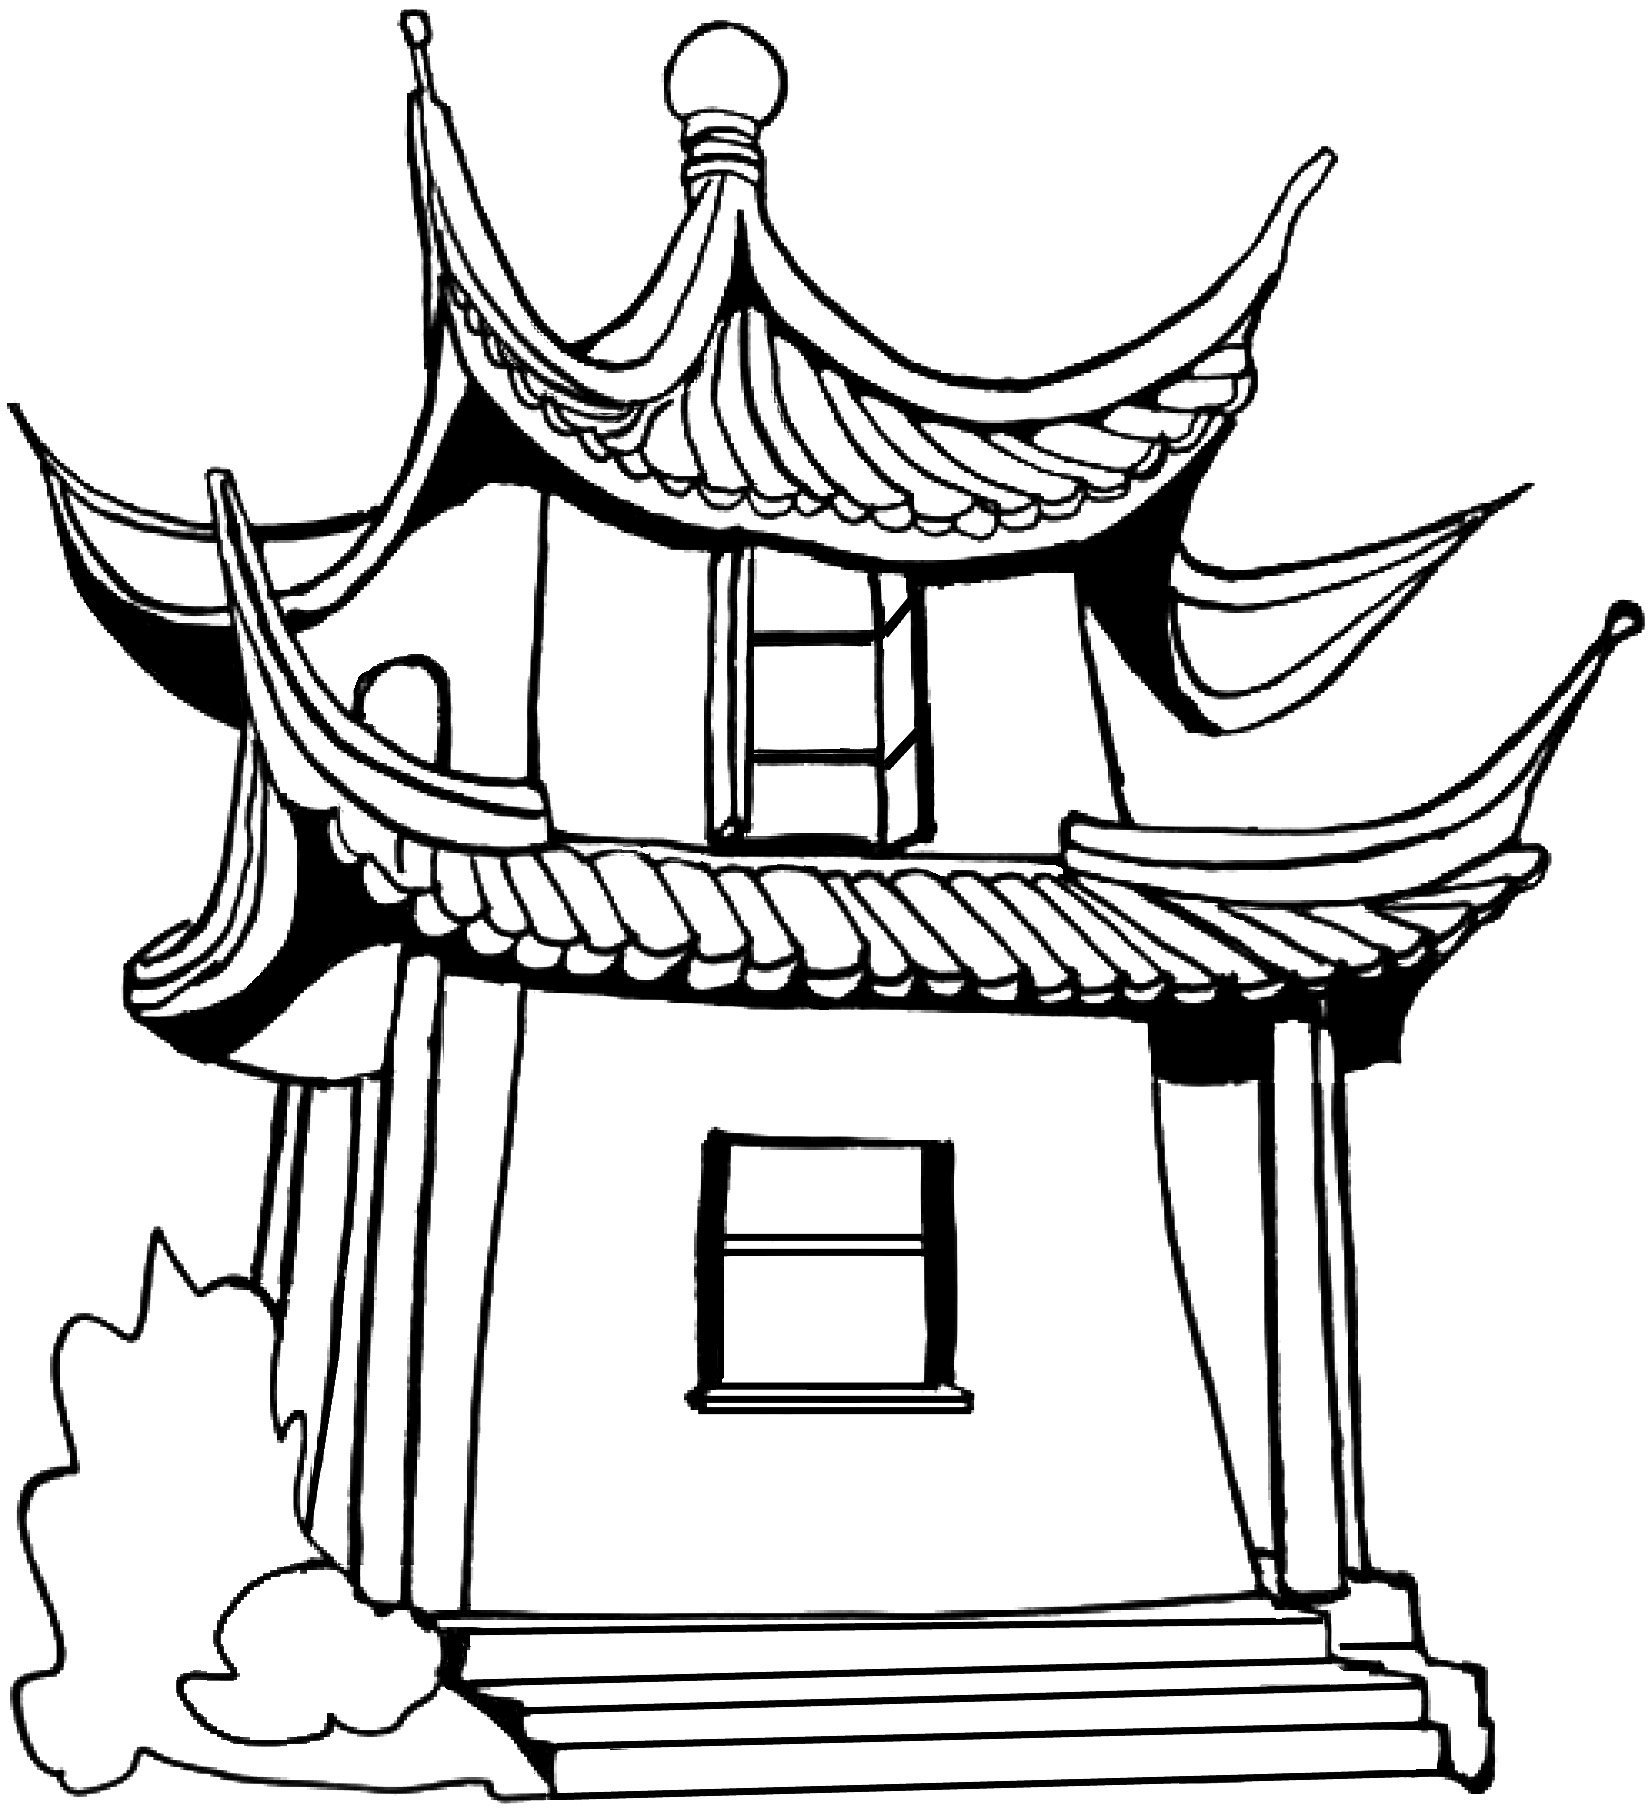 Китайский домик раскраска